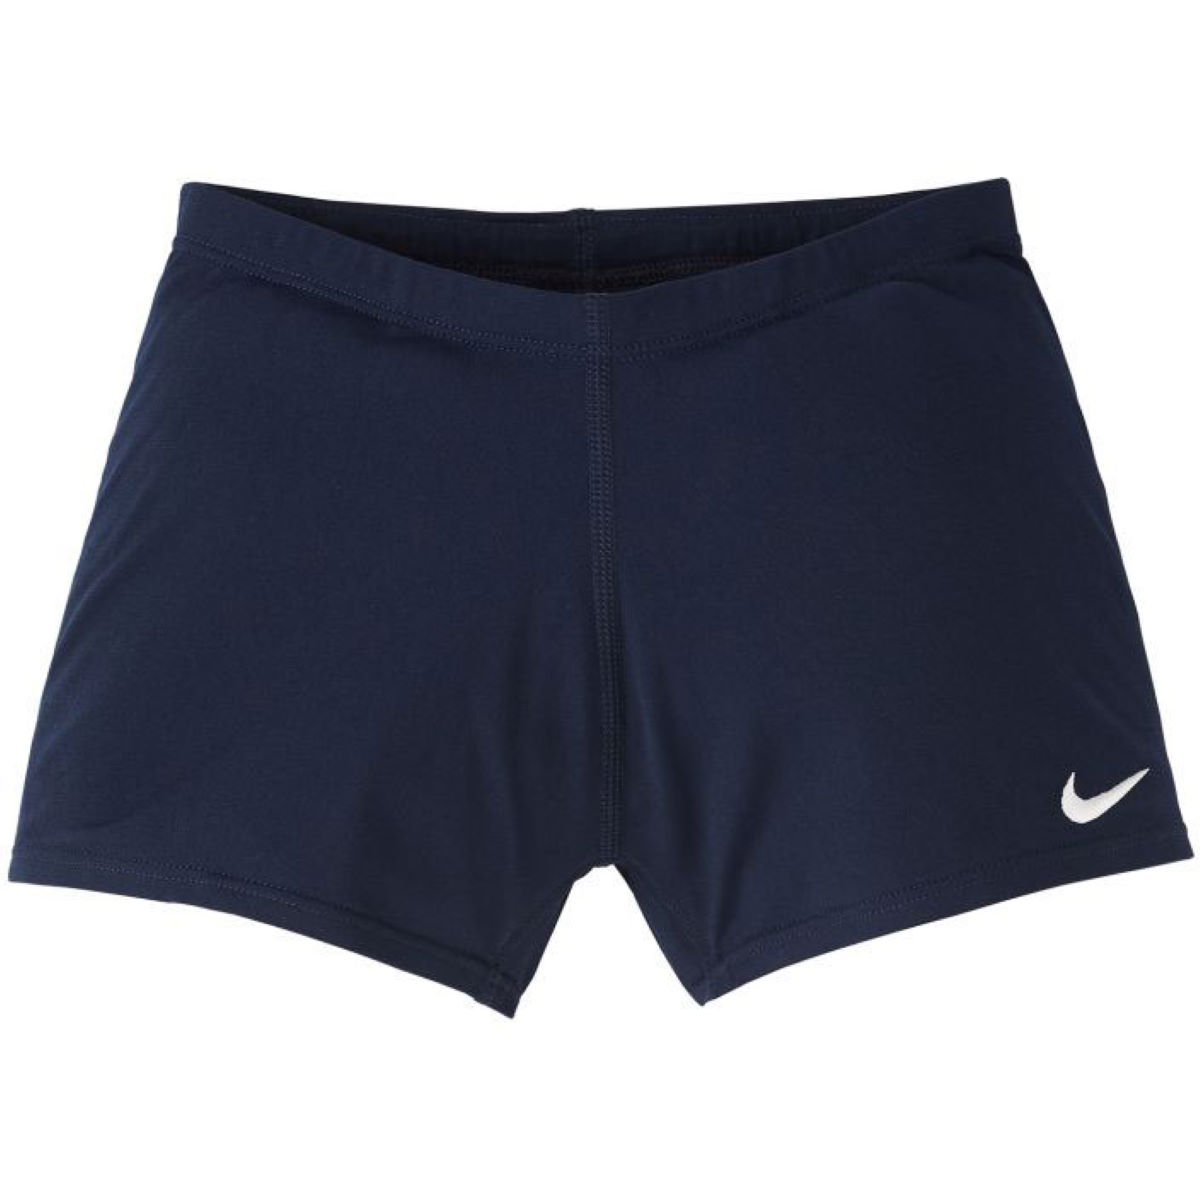 Pantalón corto Nike Hydrastrong para niño - Bañadores cortos